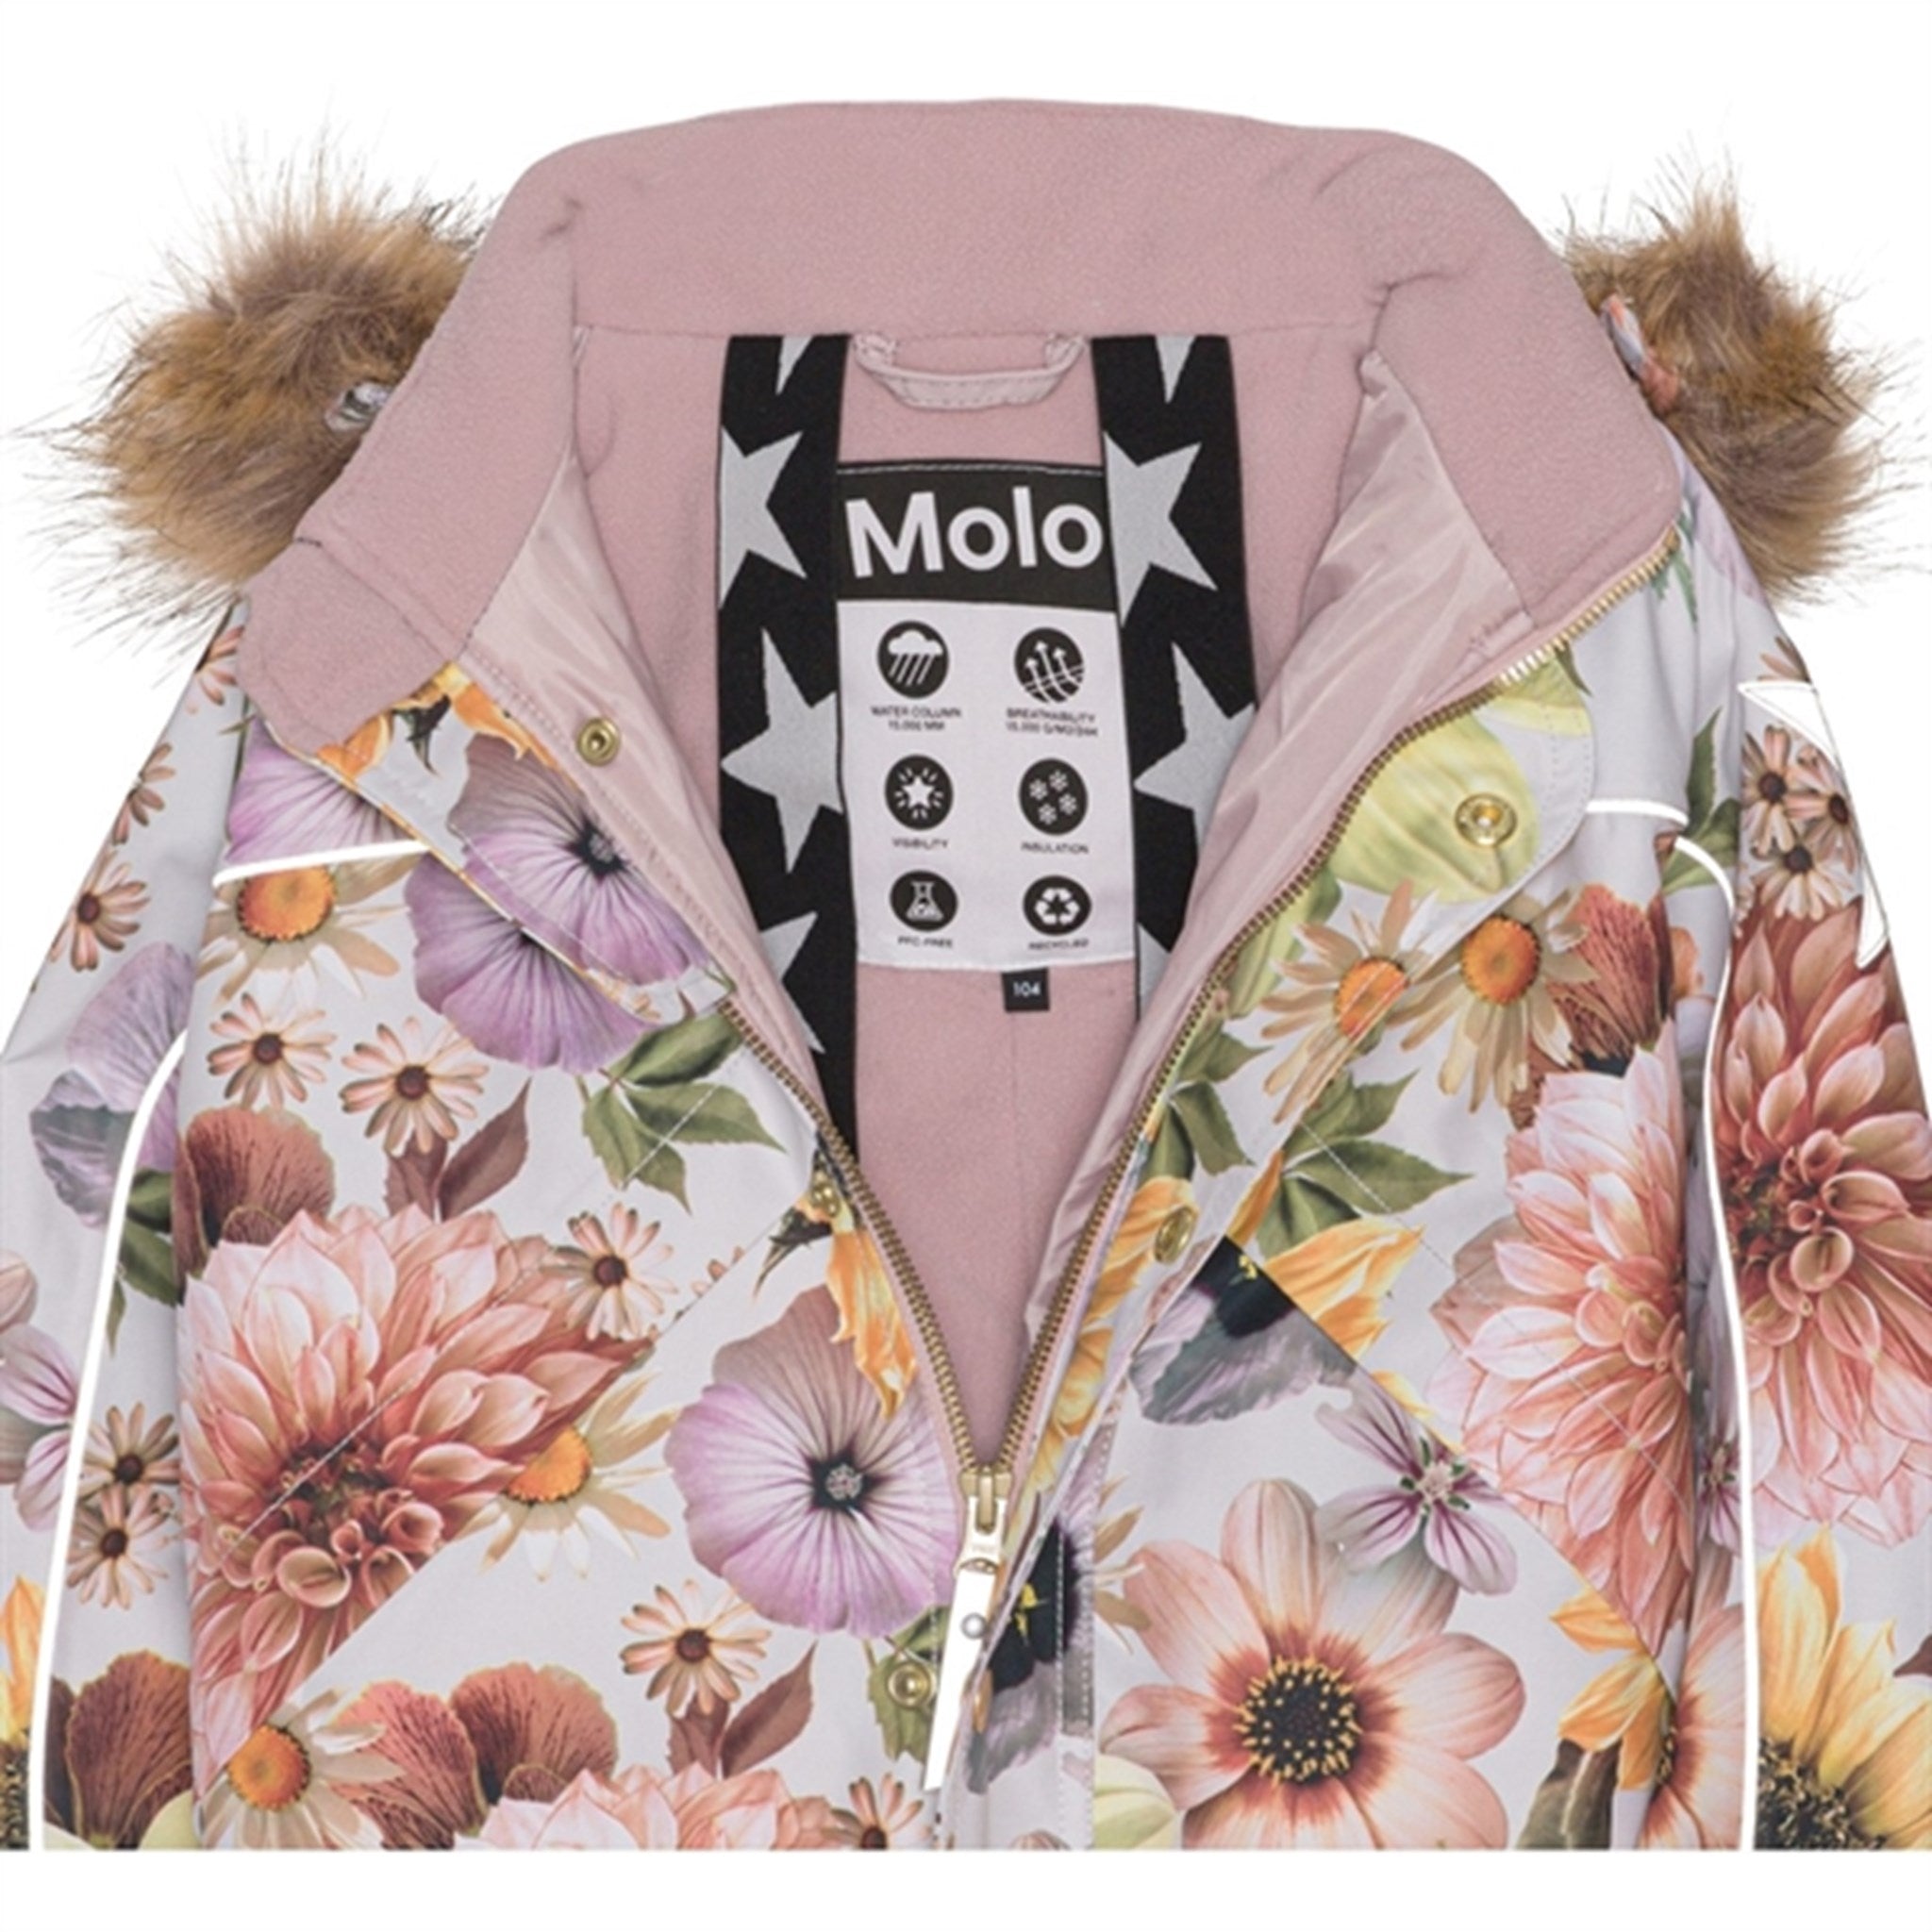 Molo Retro Flowers Polaris Fur Junior Vinteroverall 6